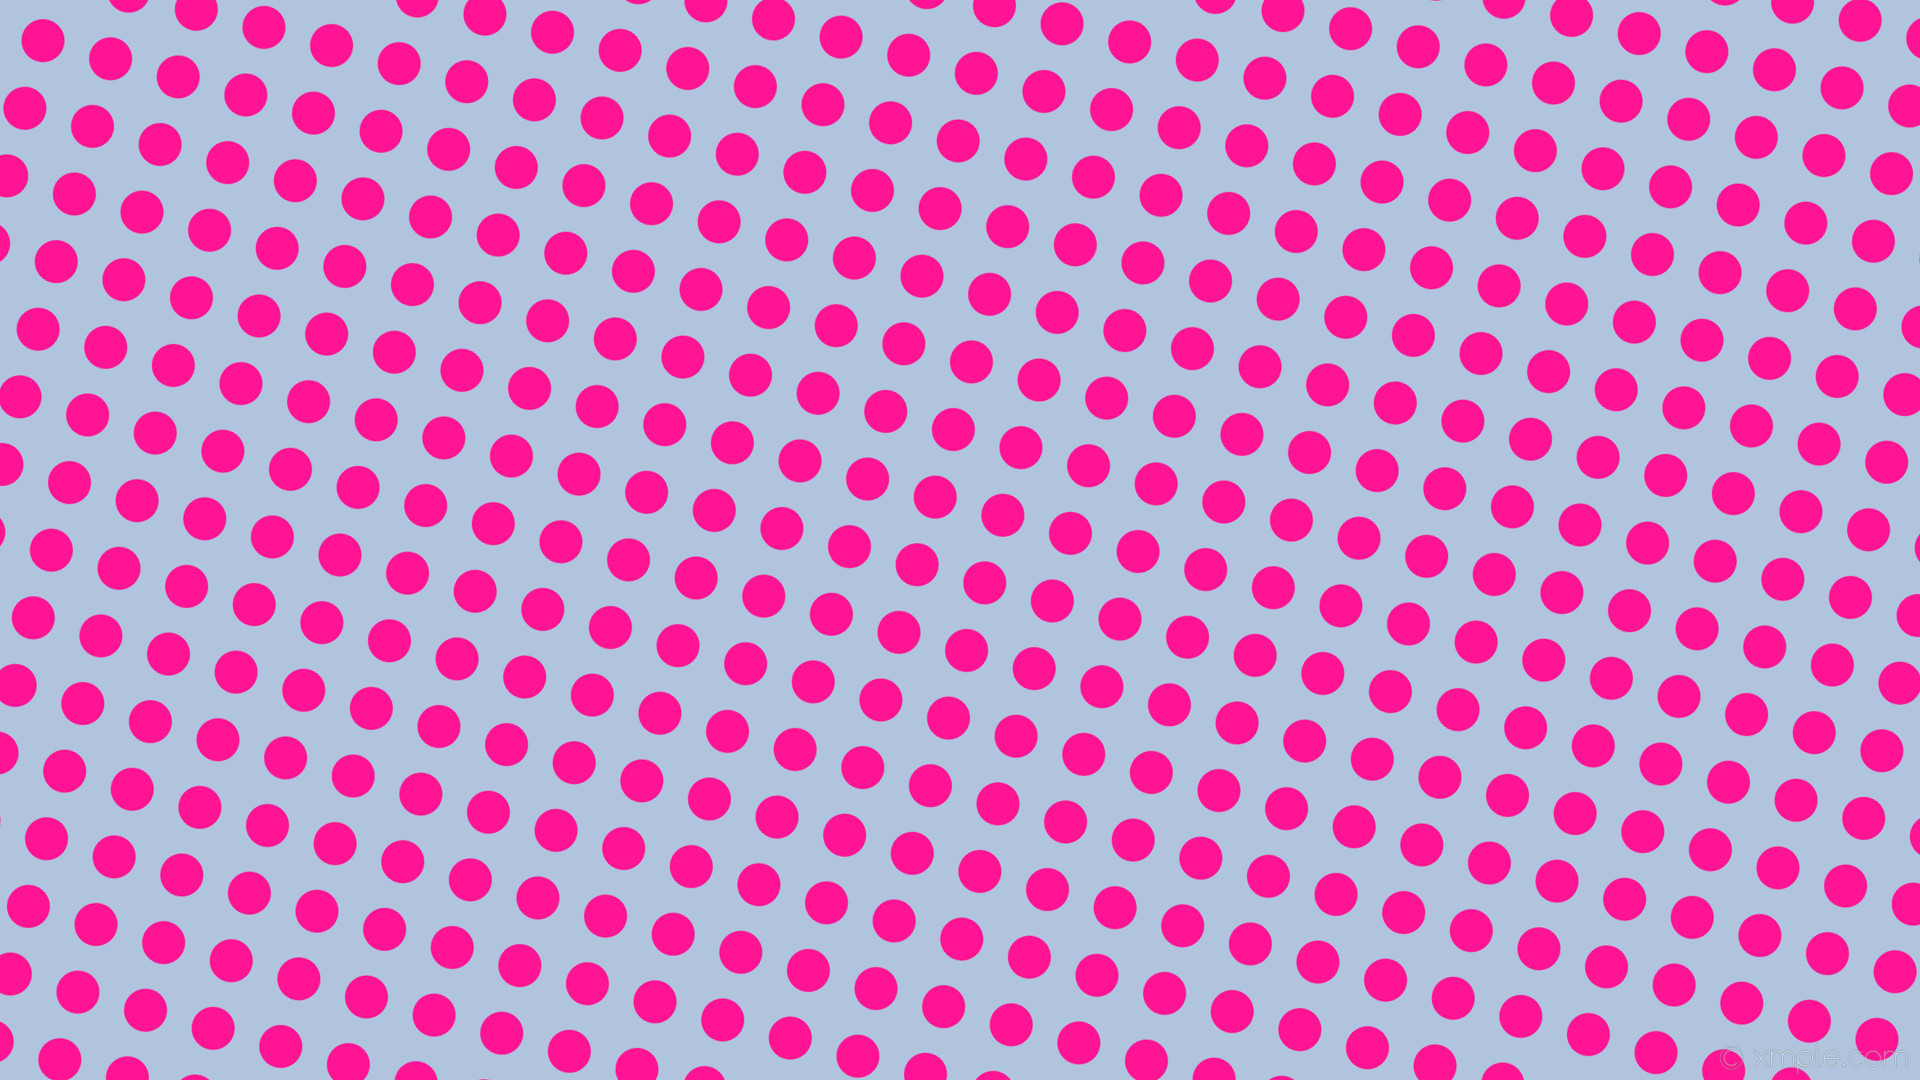 1920x1080 wallpaper blue pink polka dots spots light steel blue deep pink #b0c4de  #ff1493 165